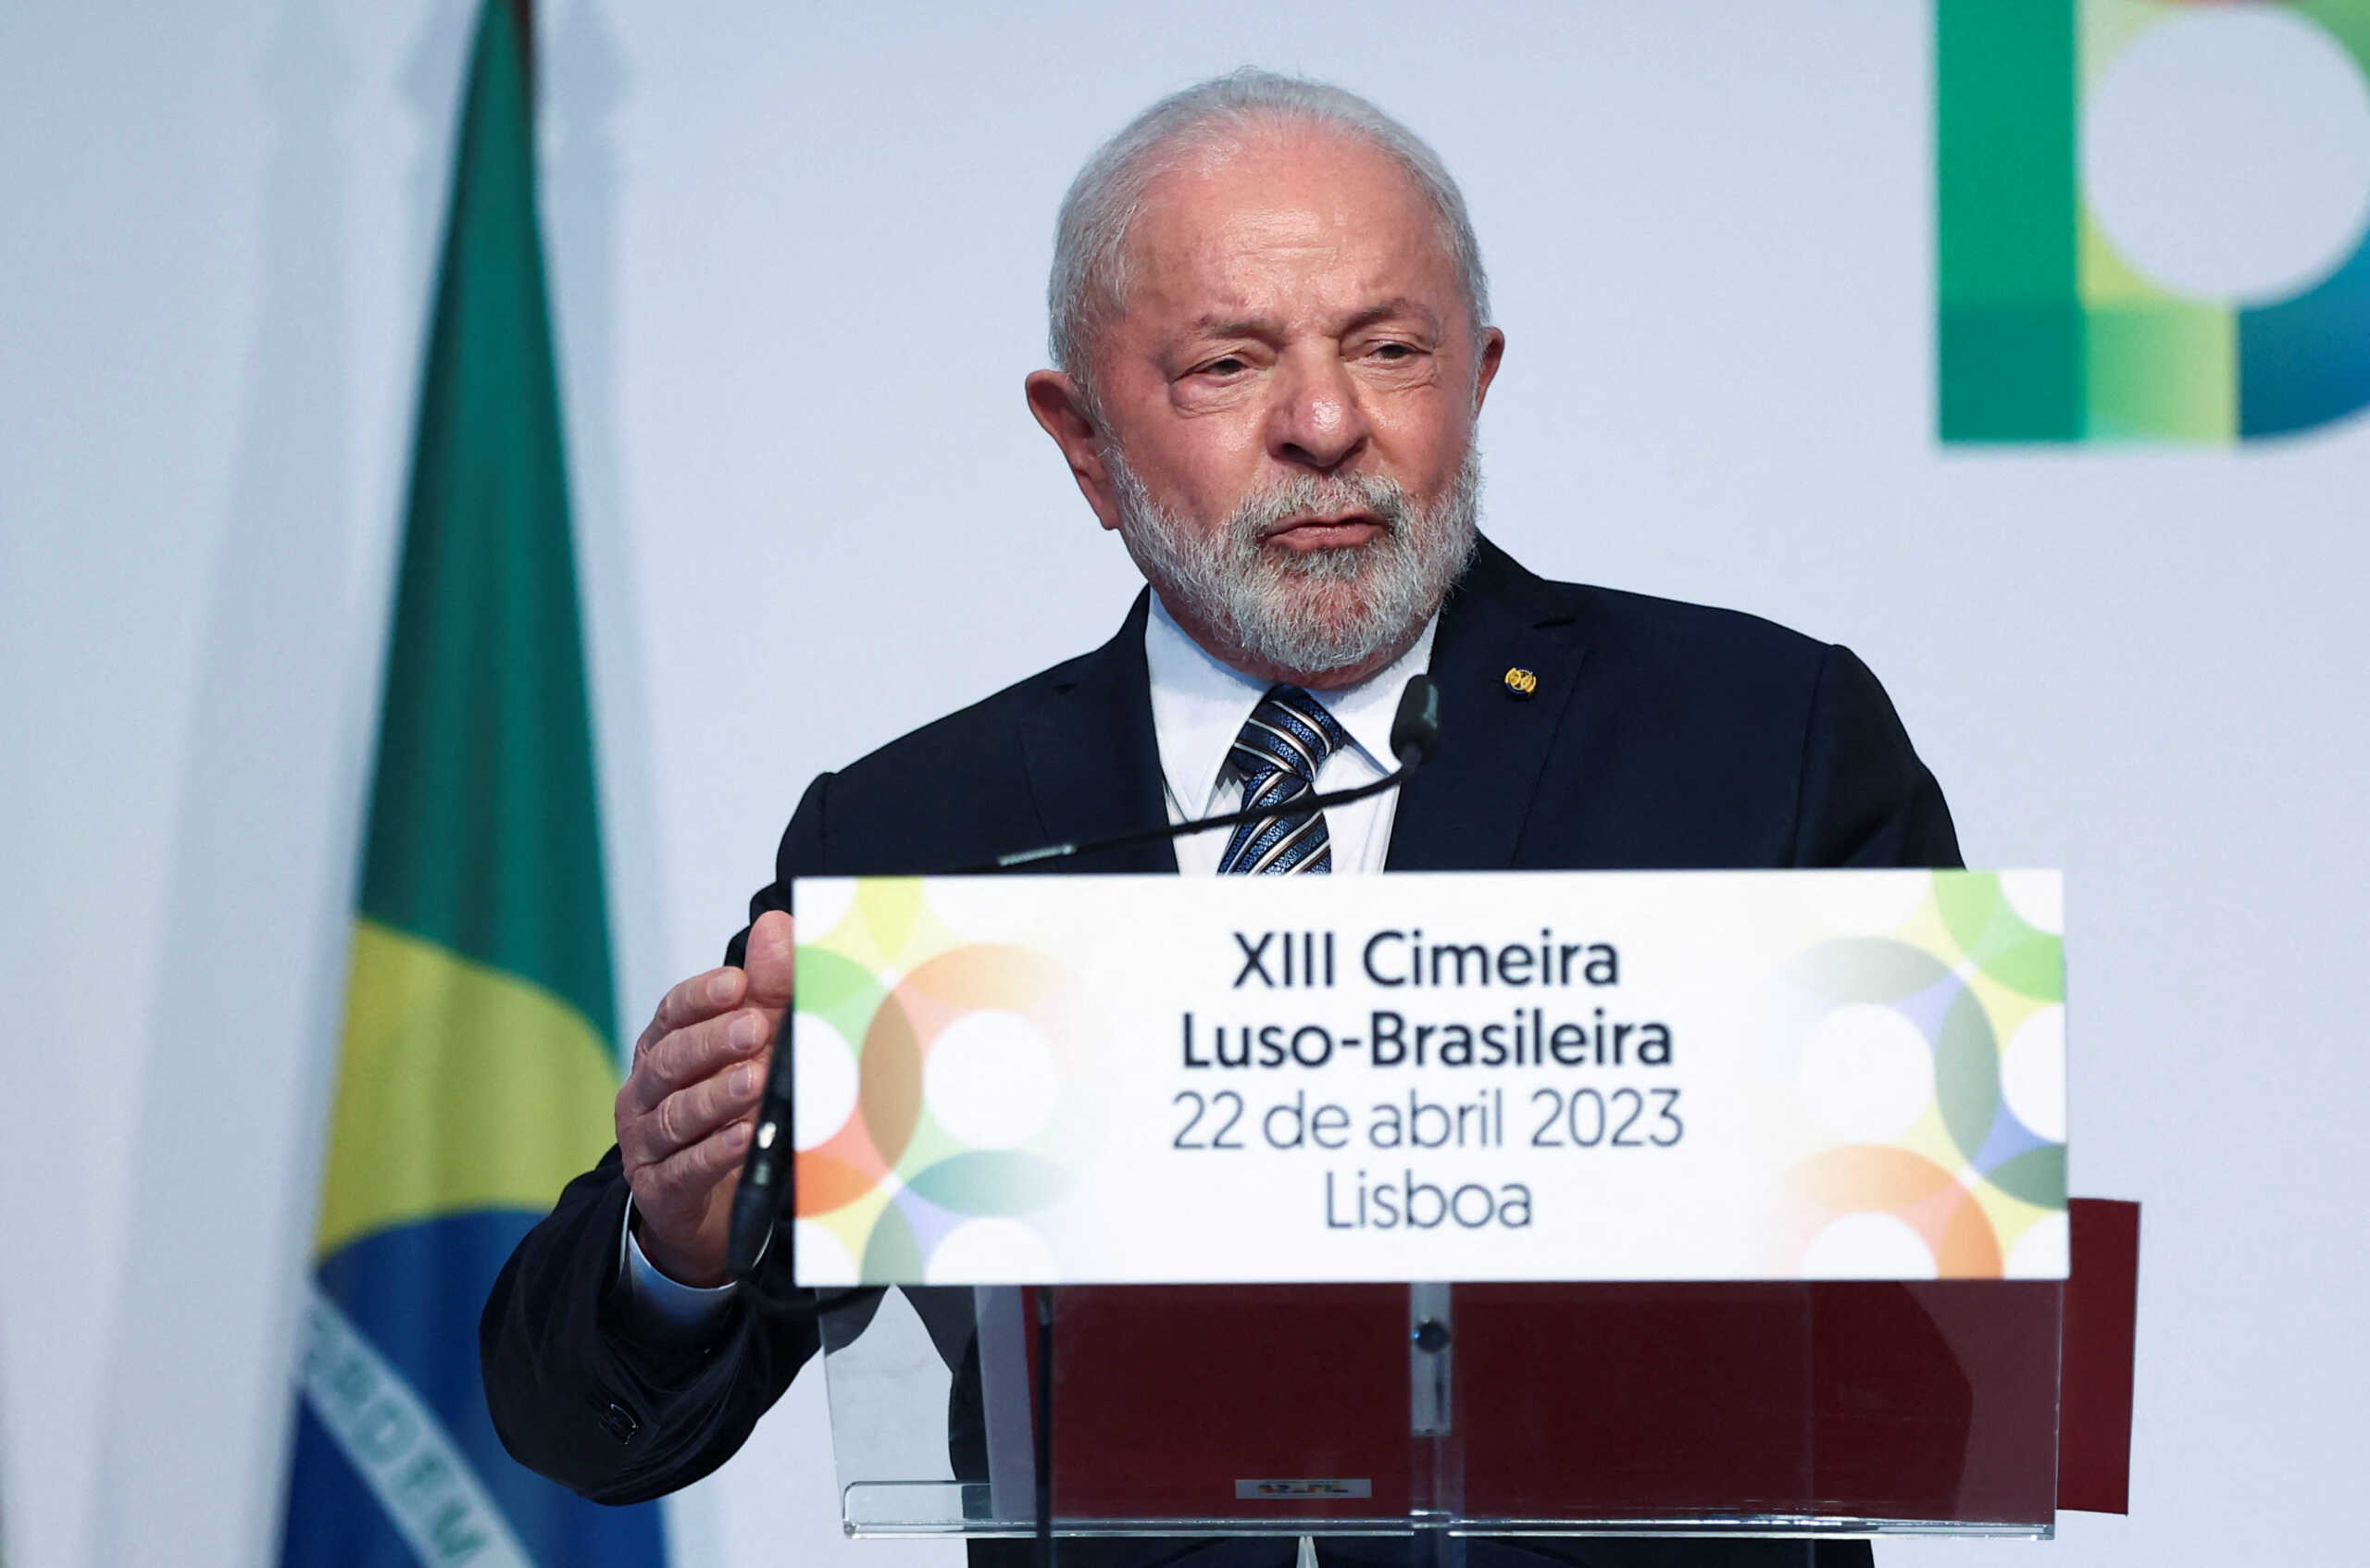 Βραζιλία: Ο Λούλα δεν θέλει «να ευαρεστήσει κανέναν» με τα σχόλιά του για την Ουκρανία